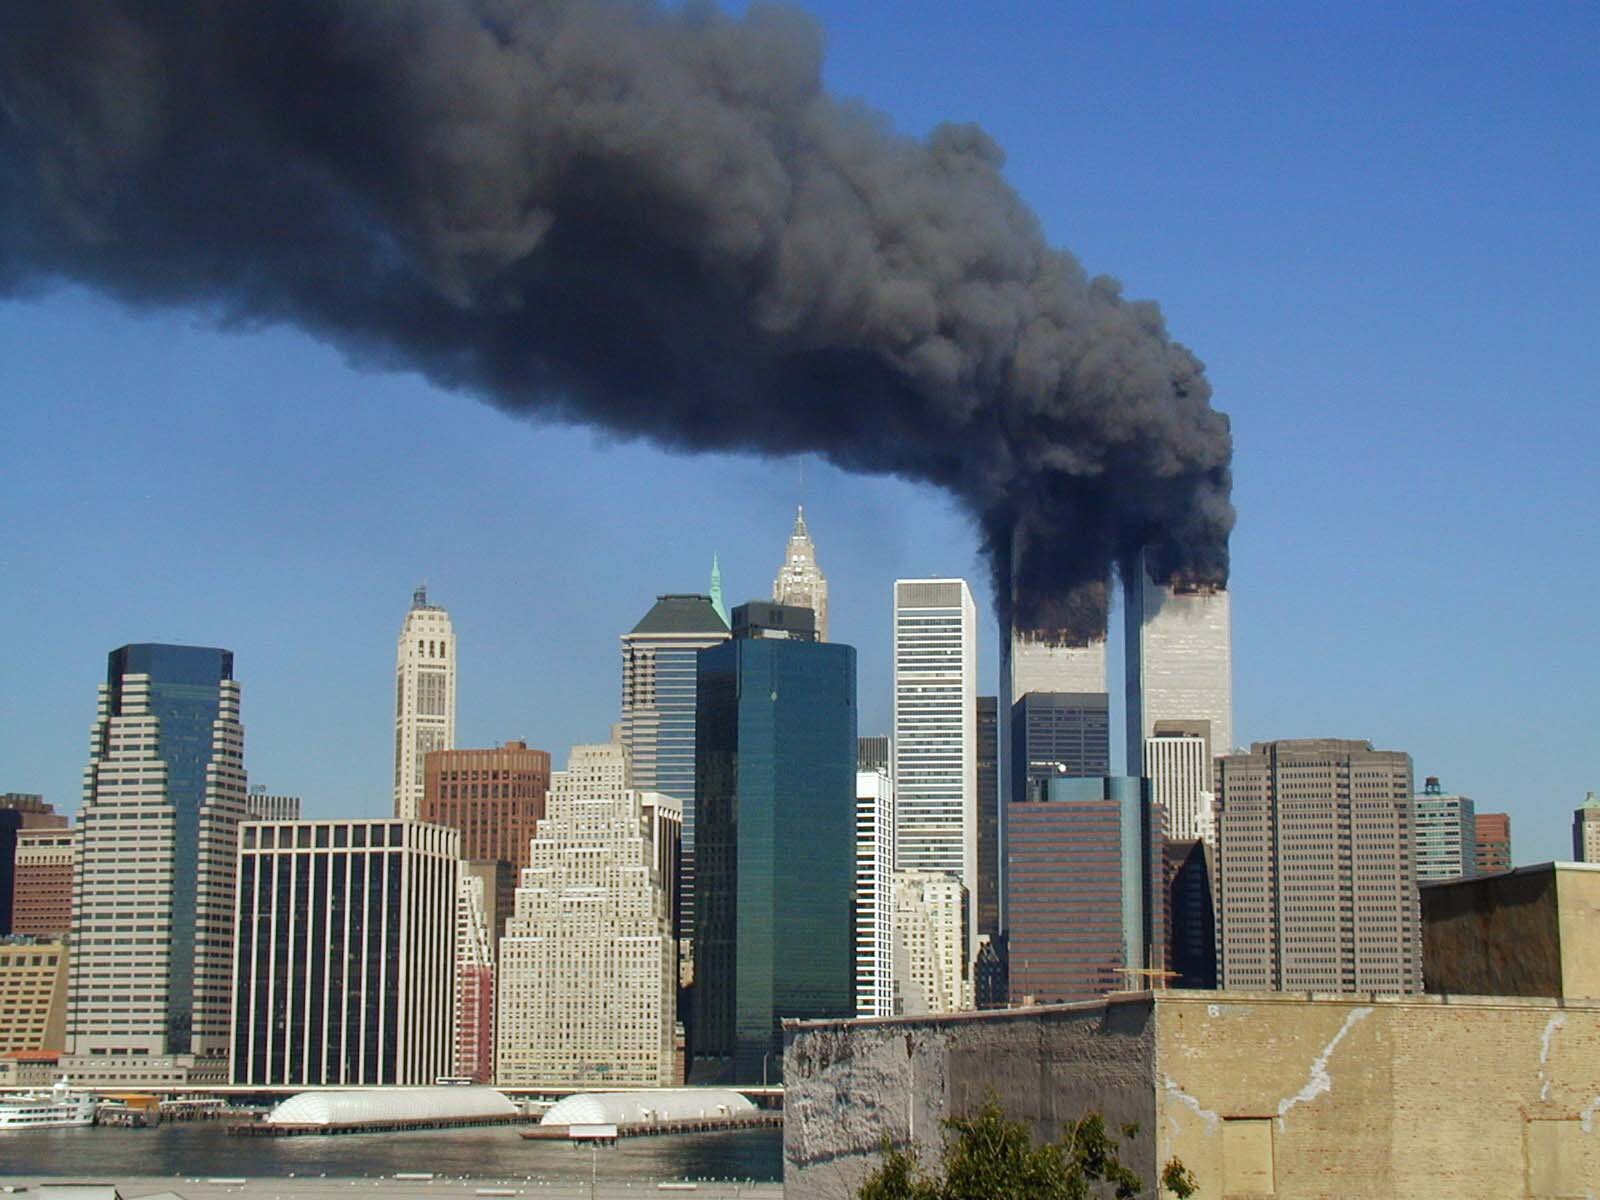 Zdjęcie przedstawia metropolię z wieżowcami. Z górnej części dwóch drapaczy chmur wydobywa się gęsty, czarny dym.   